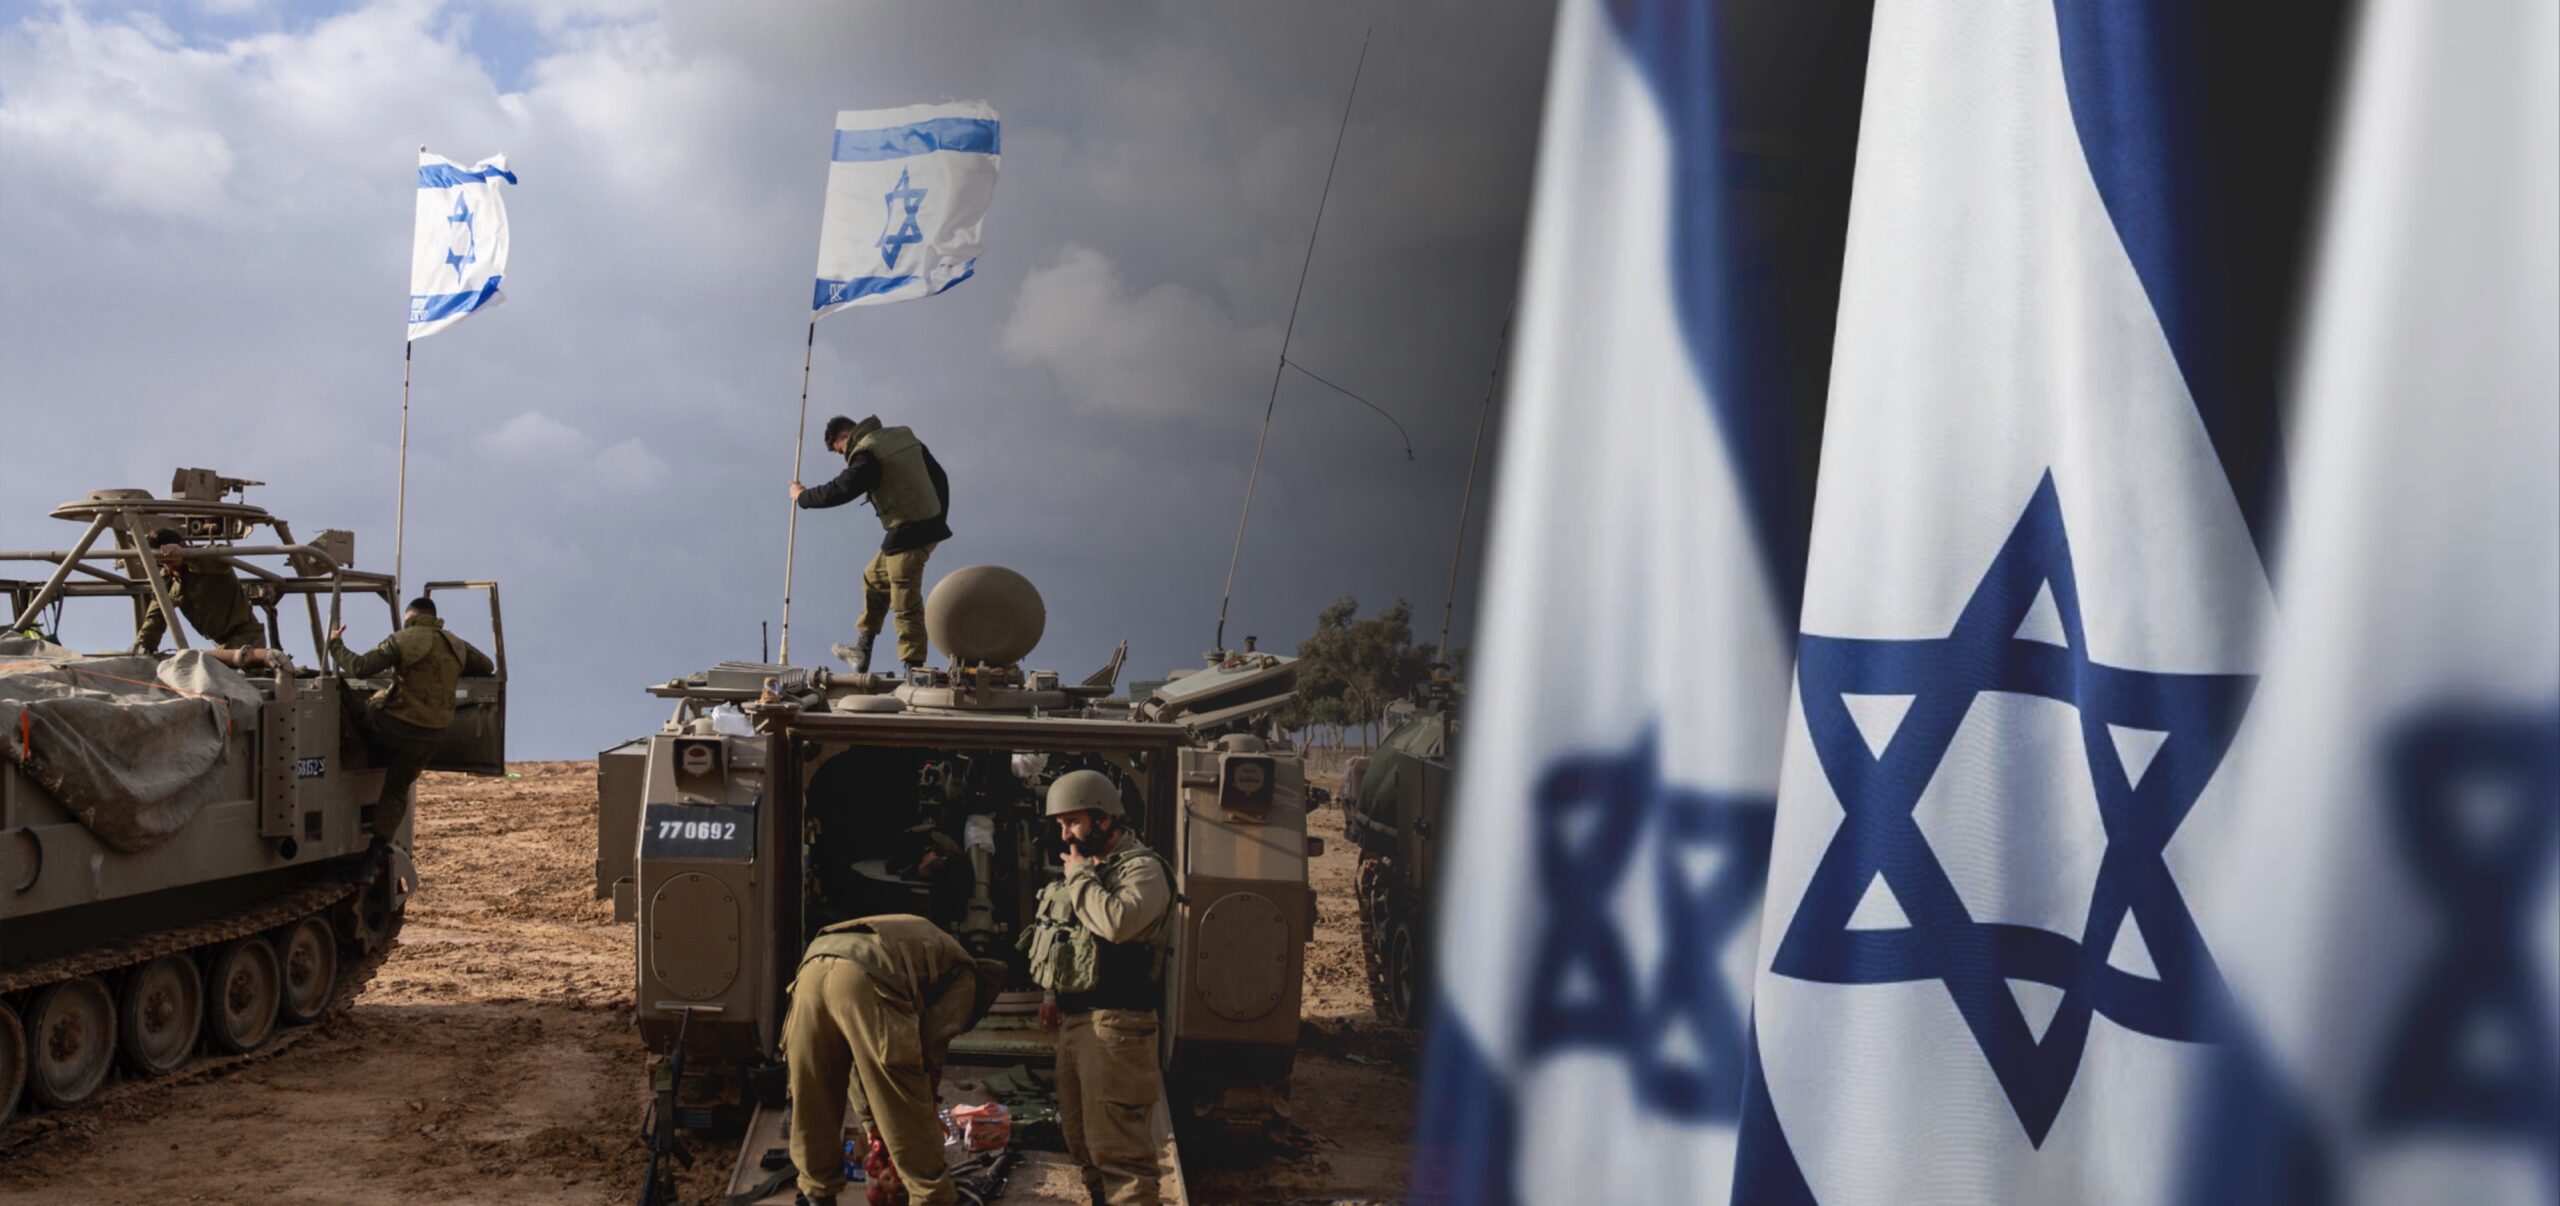 israel at war,live updates,israel war